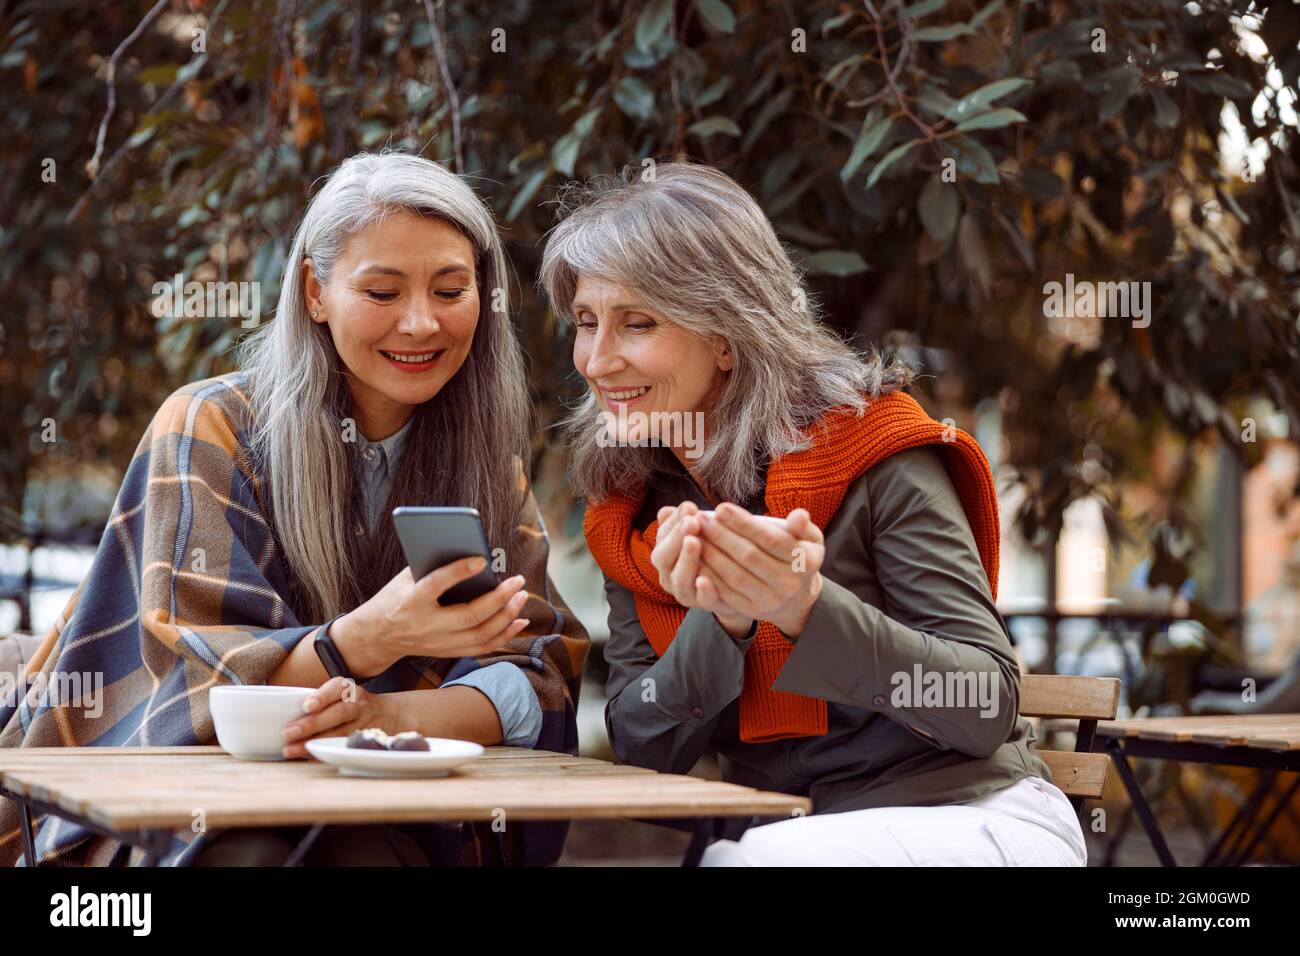 Lächelnde asiatische Dame zeigt einem Freund, der im Straßencafé sitzt, Fotos am Telefon Stockfoto